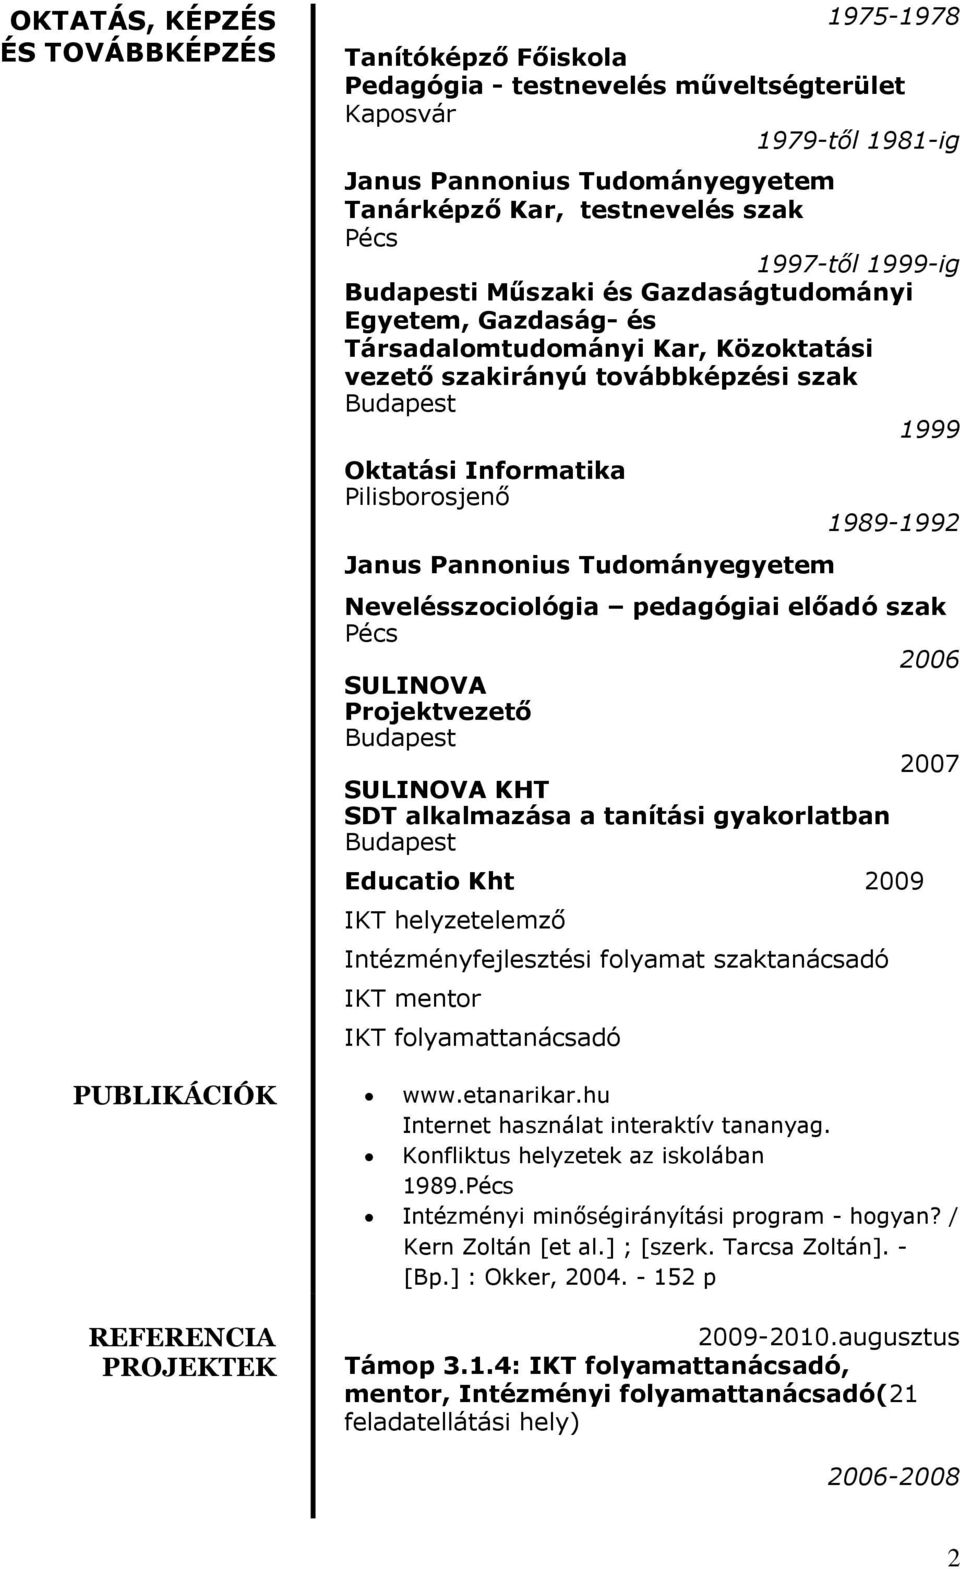 Pannonius Tudományegyetem 1989-1992 Nevelésszociológia pedagógiai előadó szak Pécs 2006 SULINOVA Projektvezető 2007 SULINOVA KHT SDT alkalmazása a tanítási gyakorlatban Educatio Kht 2009 IKT